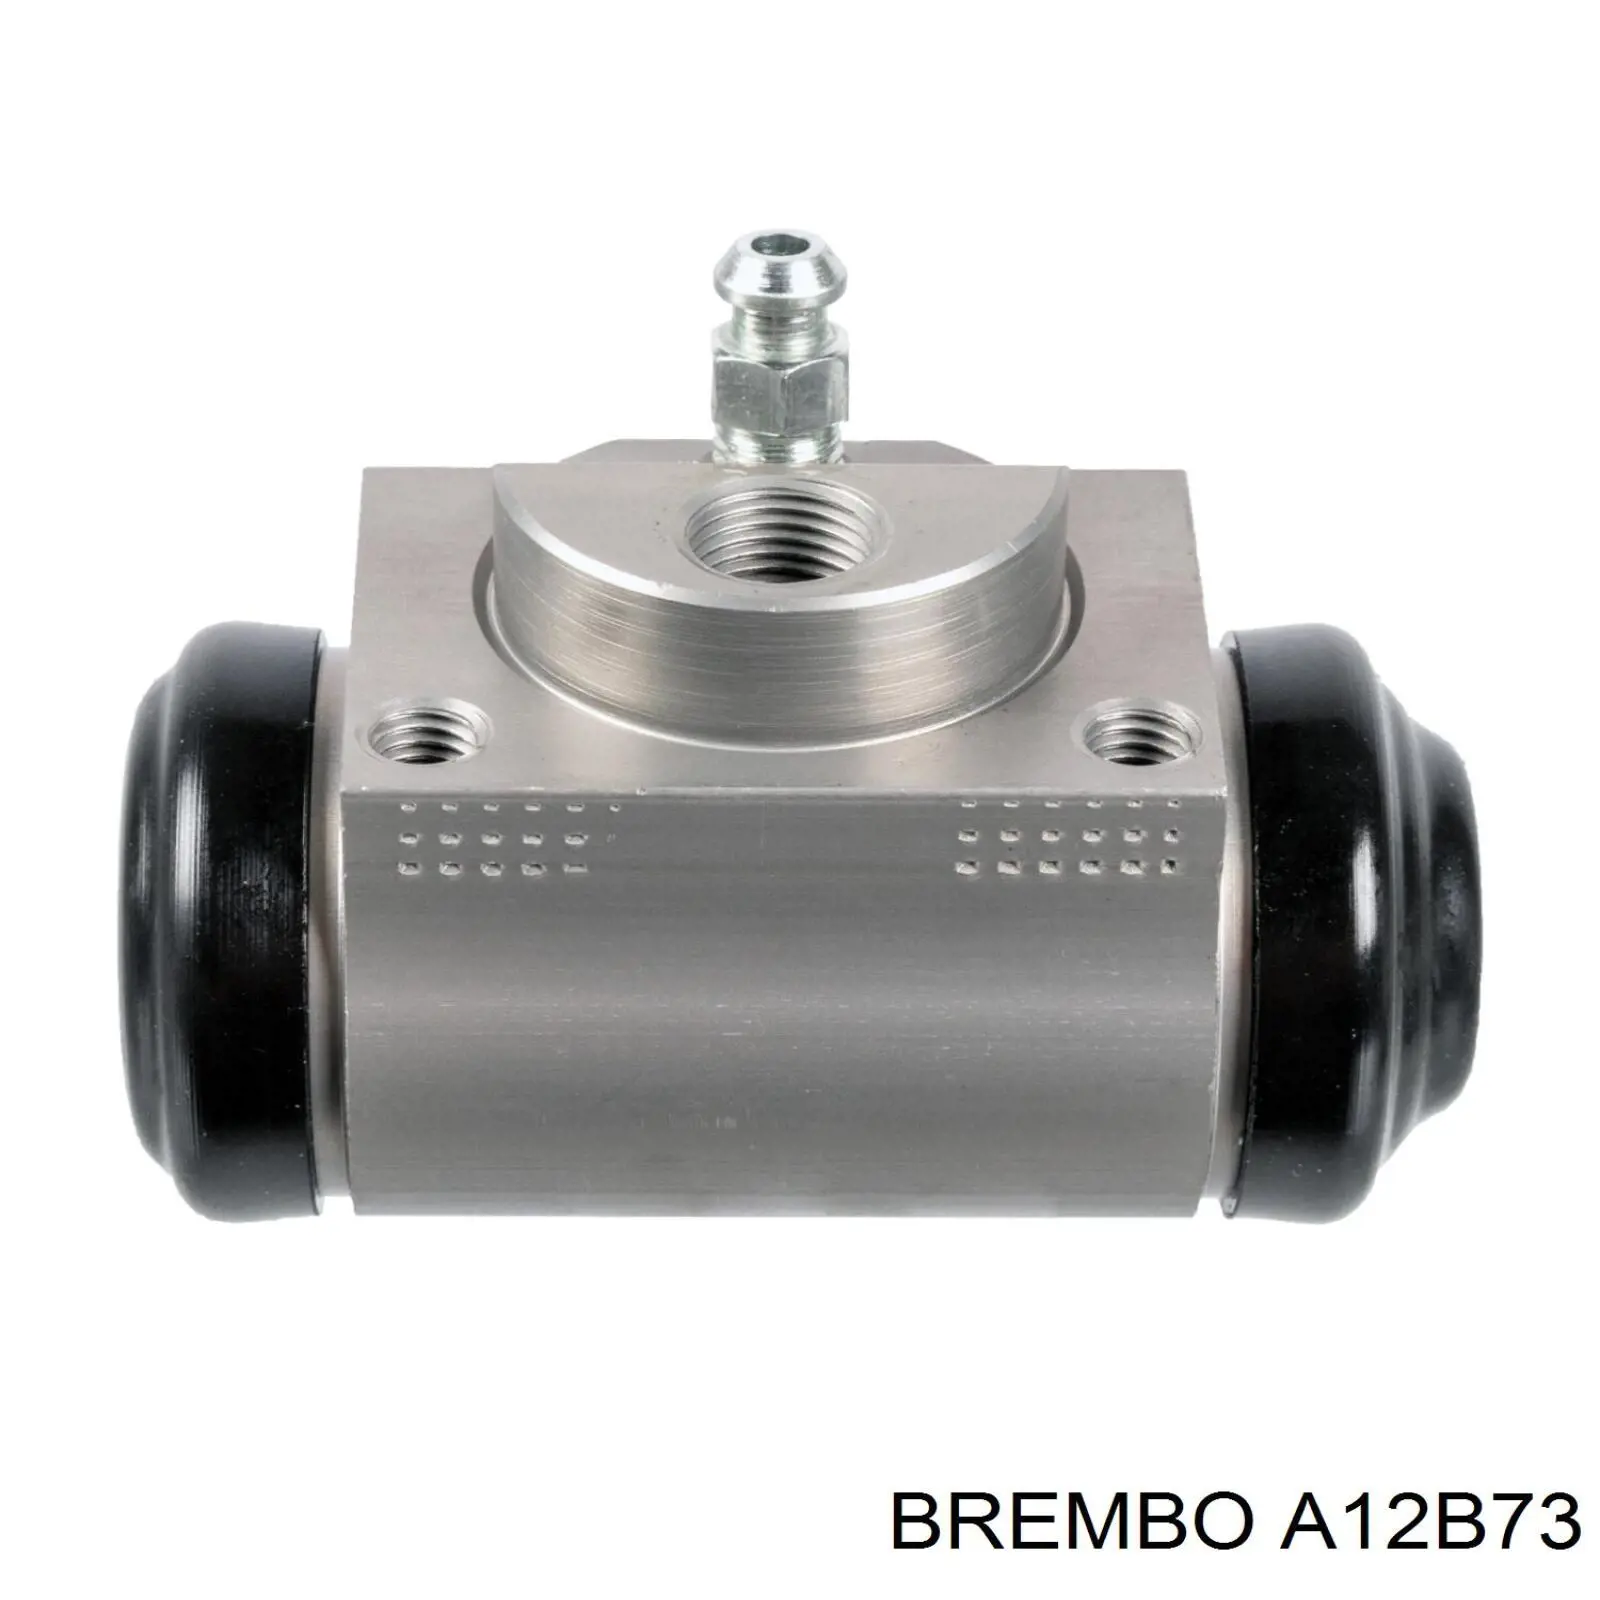 A12B73 Brembo cilindro de freno de rueda trasero